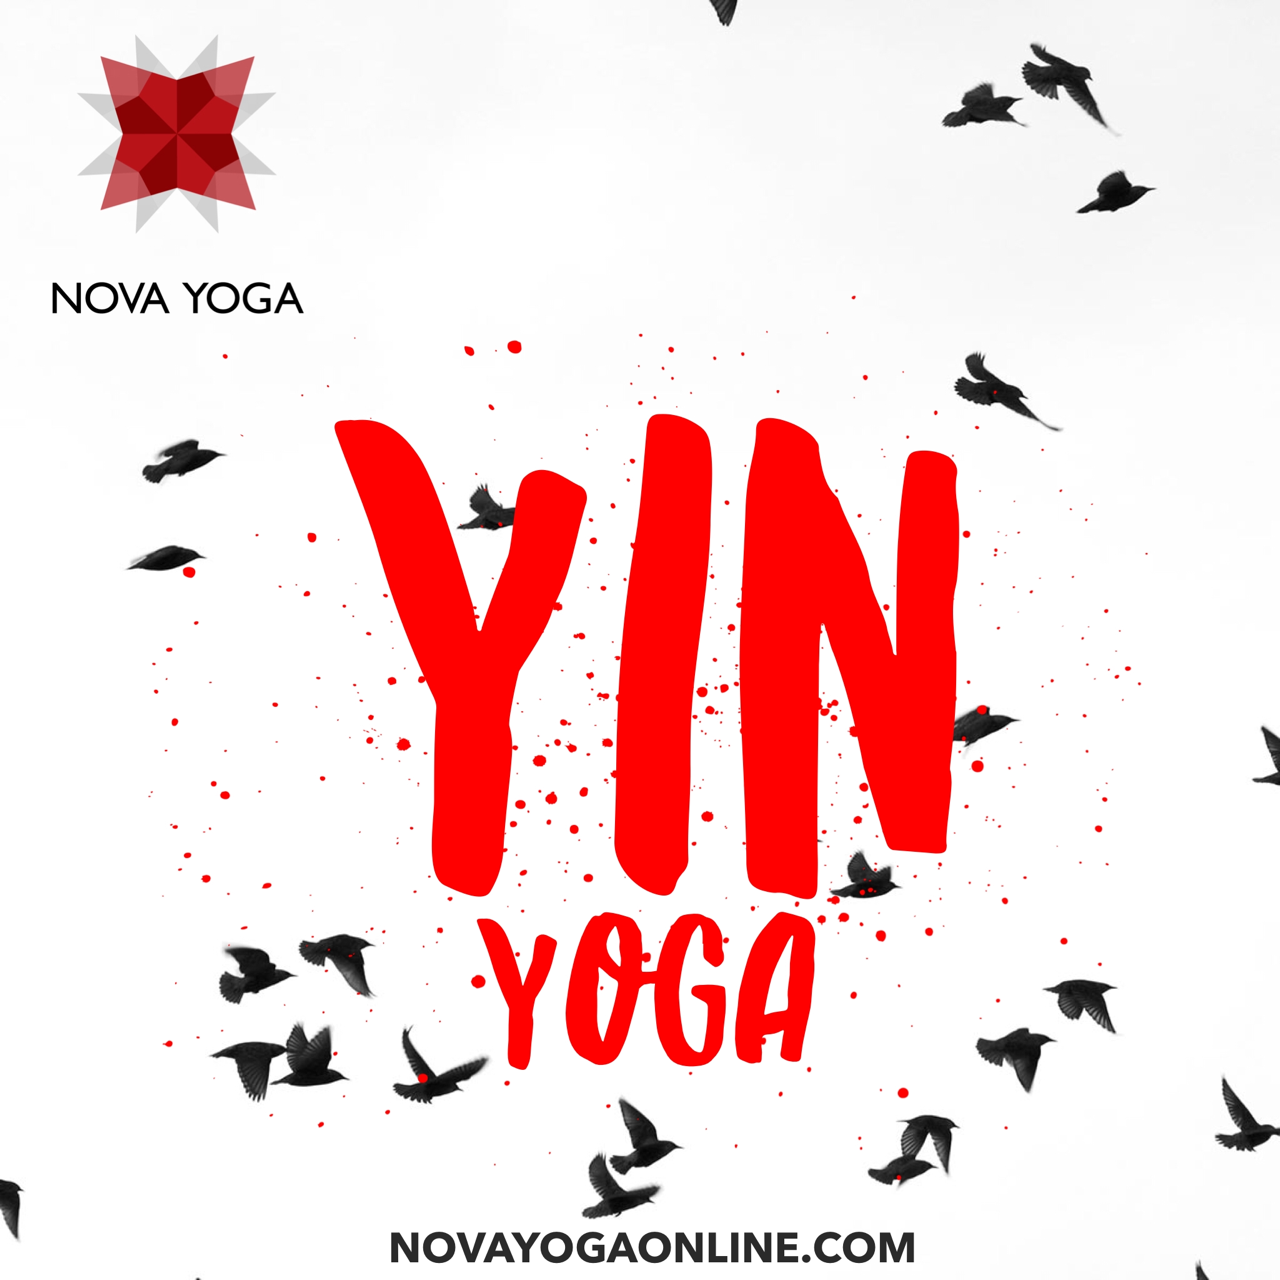 The Nova Yoga Show - Stretchy Goodness 